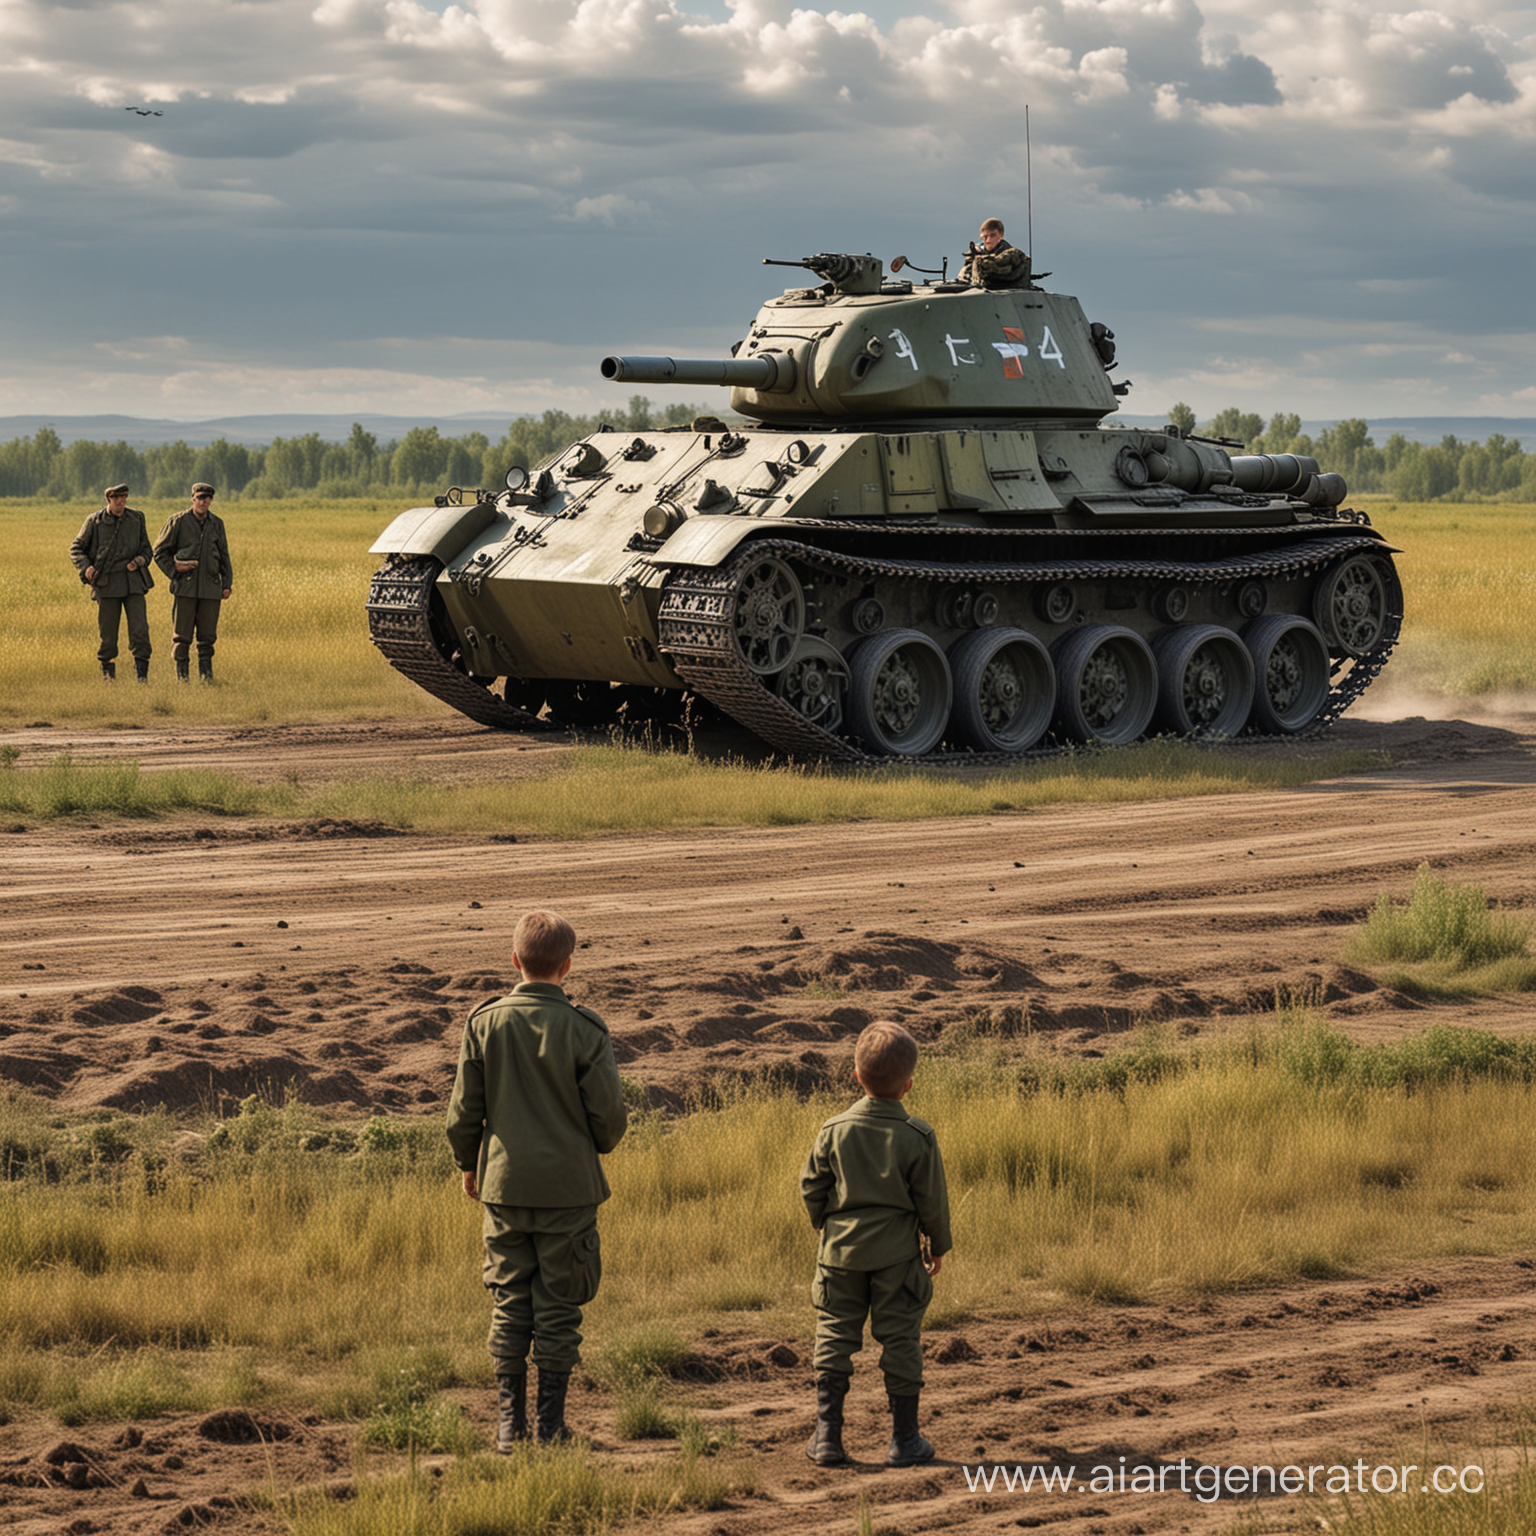 картинка на поле стоит танк Т-34 русский и рядом стоят солдаты, дети смотрят на танк, реалистичное фото